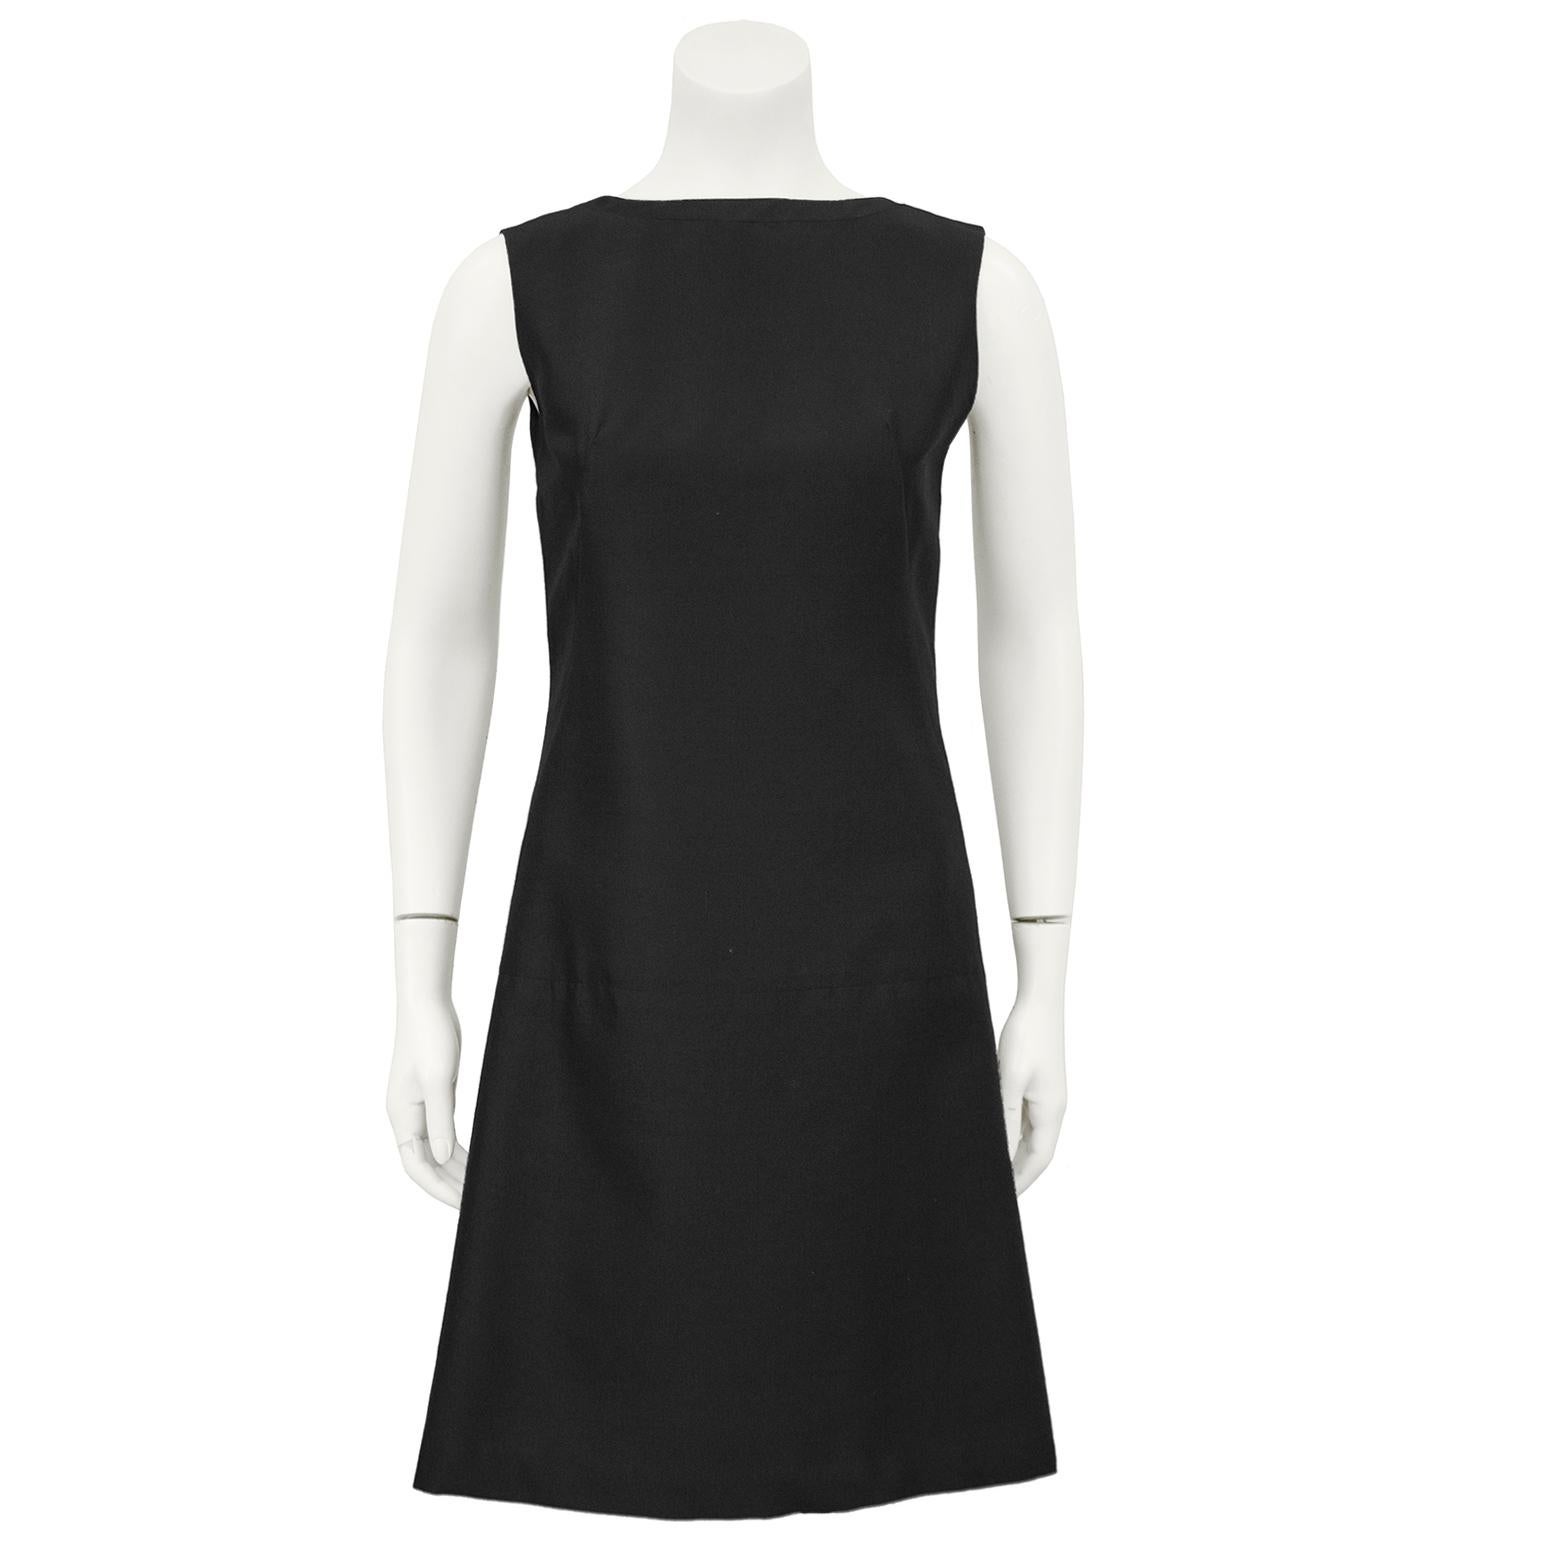 Bezauberndes schwarzes Lanz-Cocktailkleid aus Wolle im Stil der 1960er Jahre. Das ärmellose Kleid wird am Rücken mit einer Reihe von versteckten Haken und Druckknöpfen geschlossen, um ein dramatisches, mit Schleifen akzentuiertes Wickeldetail zu